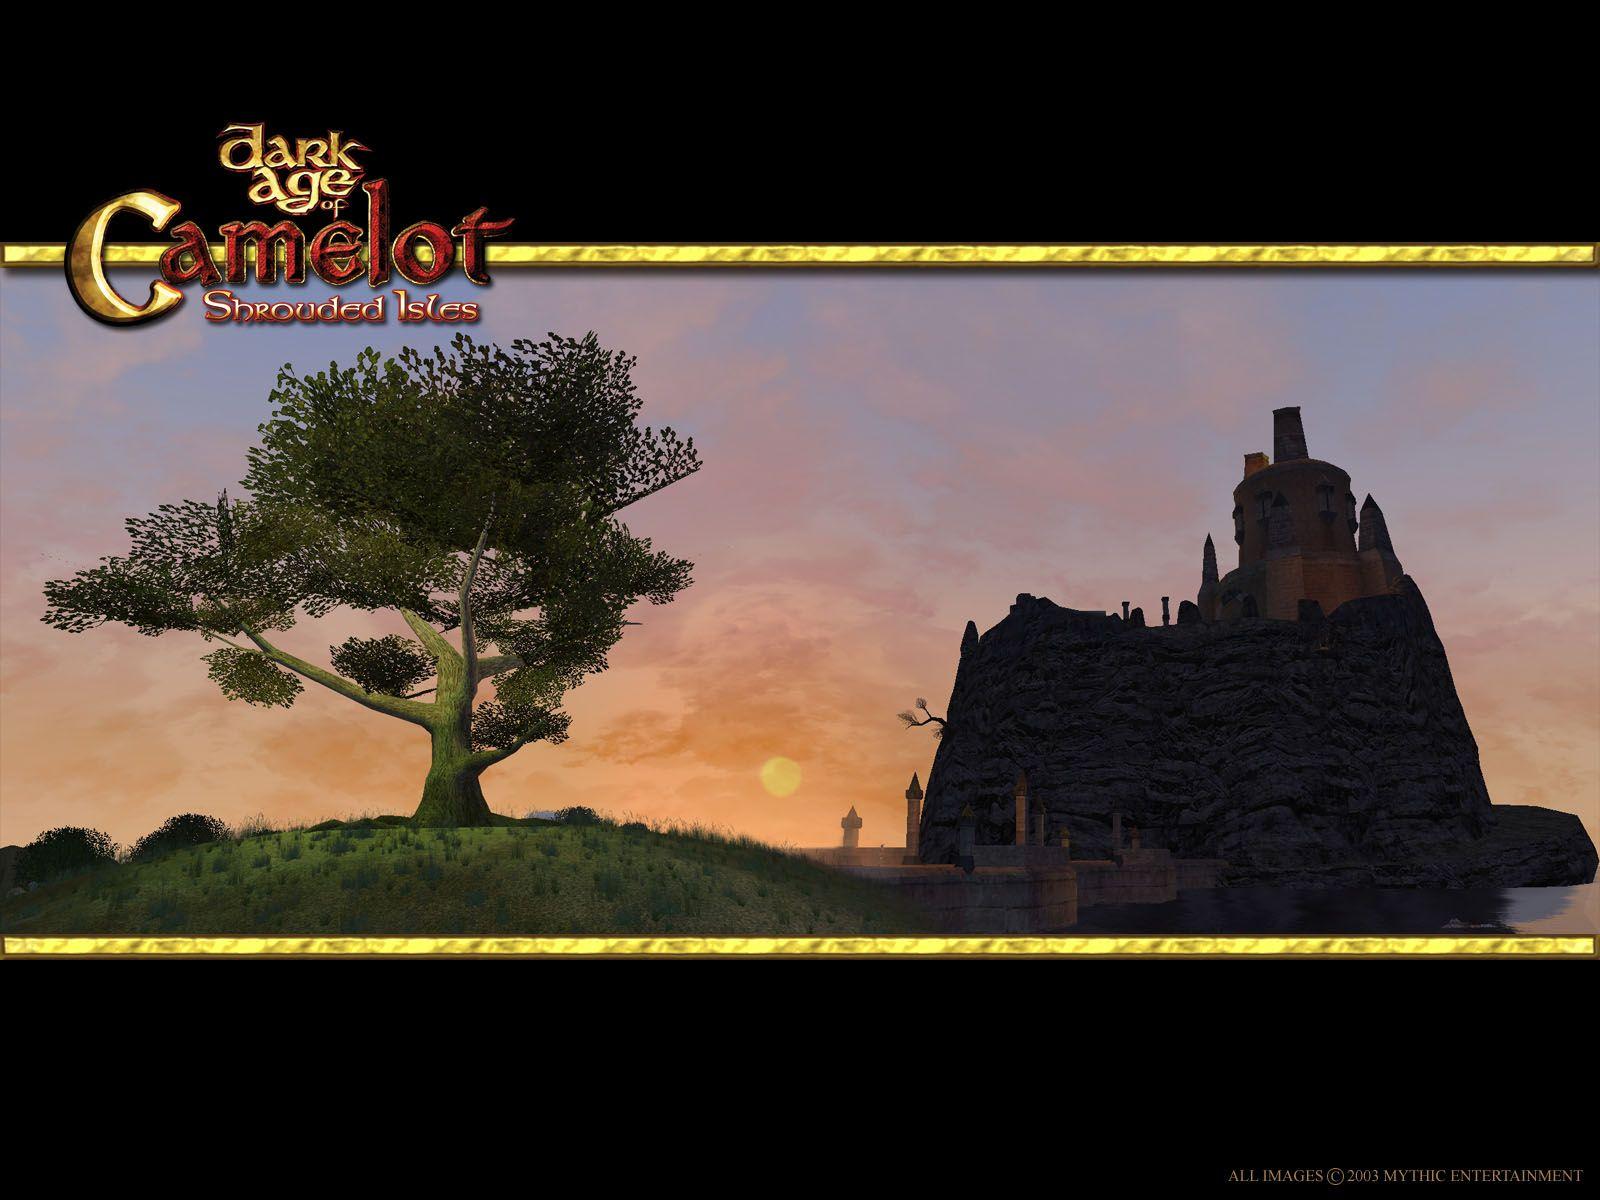 Dark Age of Camelot the award winning RvR MMO RPG!